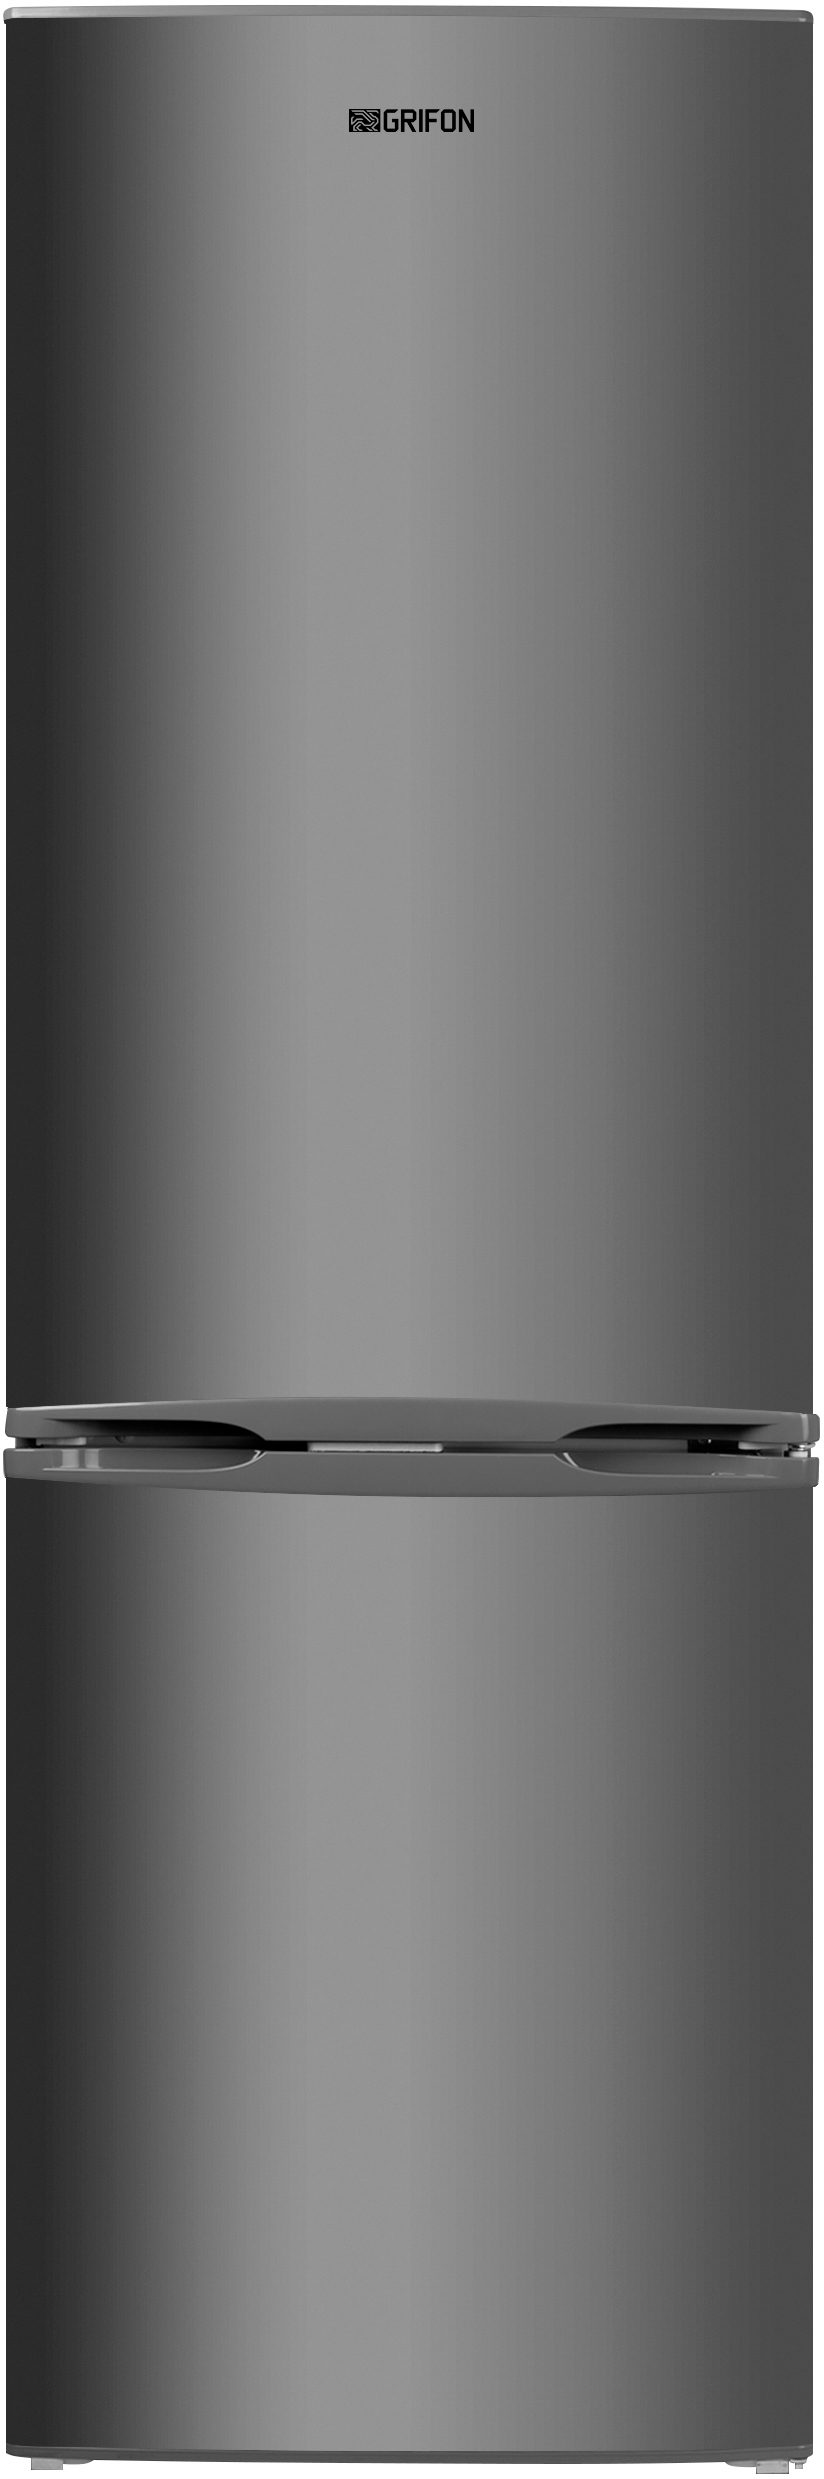 Холодильник Grifon DFN-185X в интернет-магазине, главное фото